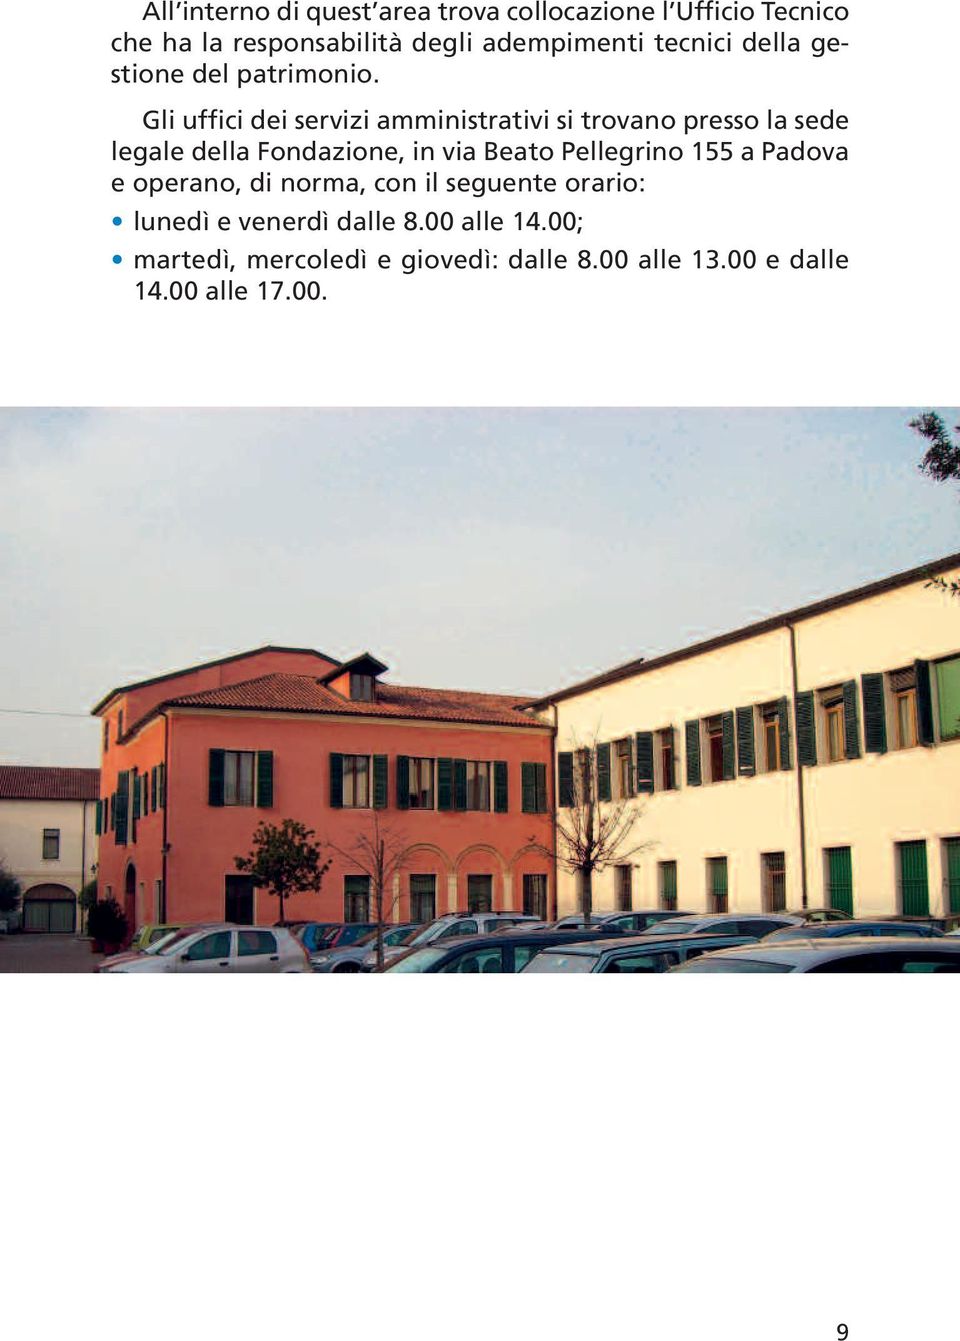 Gli uffici dei servizi amministrativi si trovano presso la sede legale della Fondazione, in via Beato